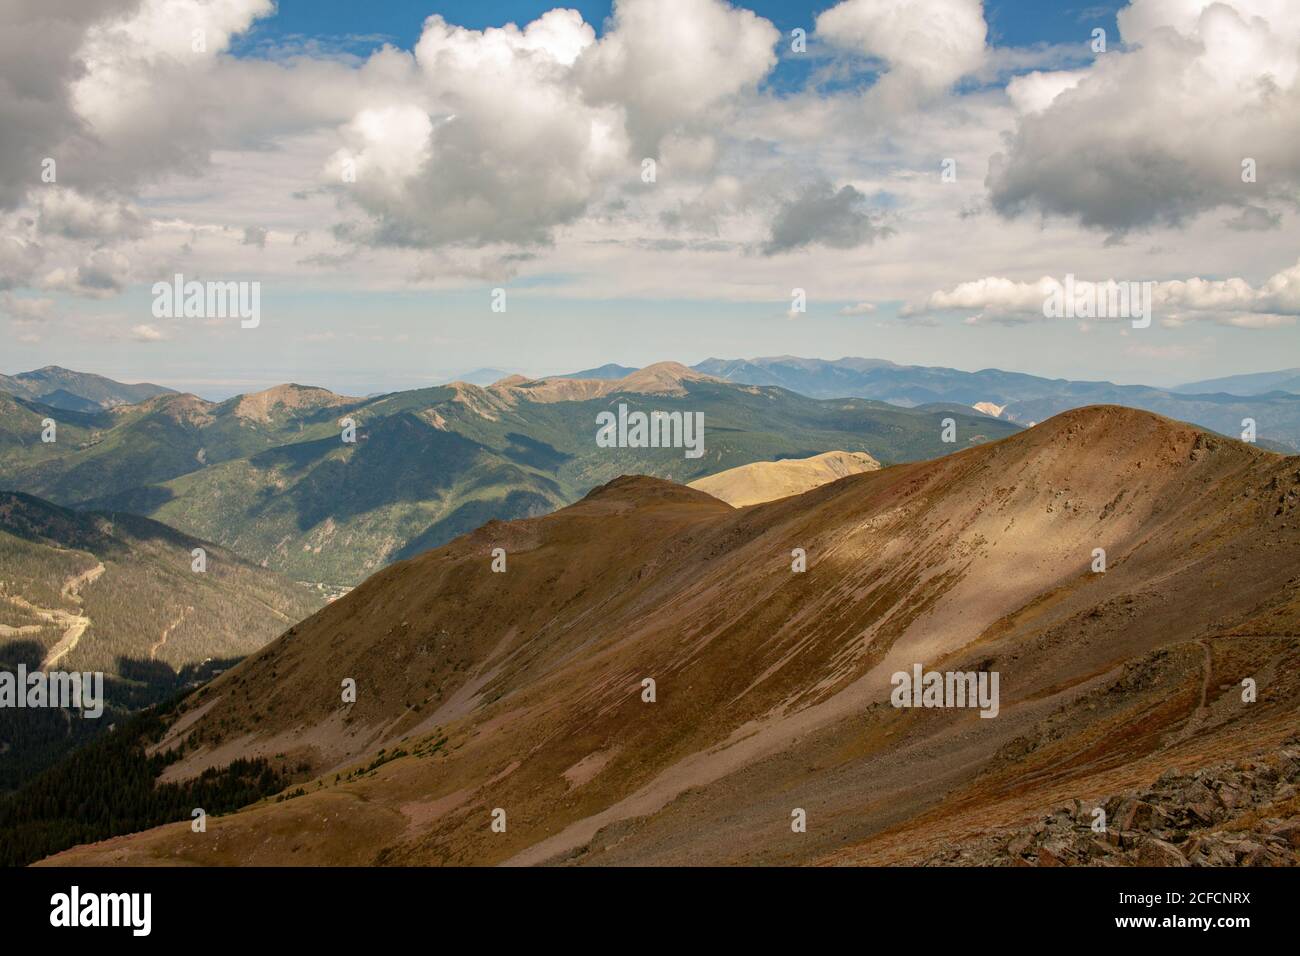 The Sangre de Cristo mountain range as seen from Wheeler Peak in Taos, New Mexico, USA Stock Photo